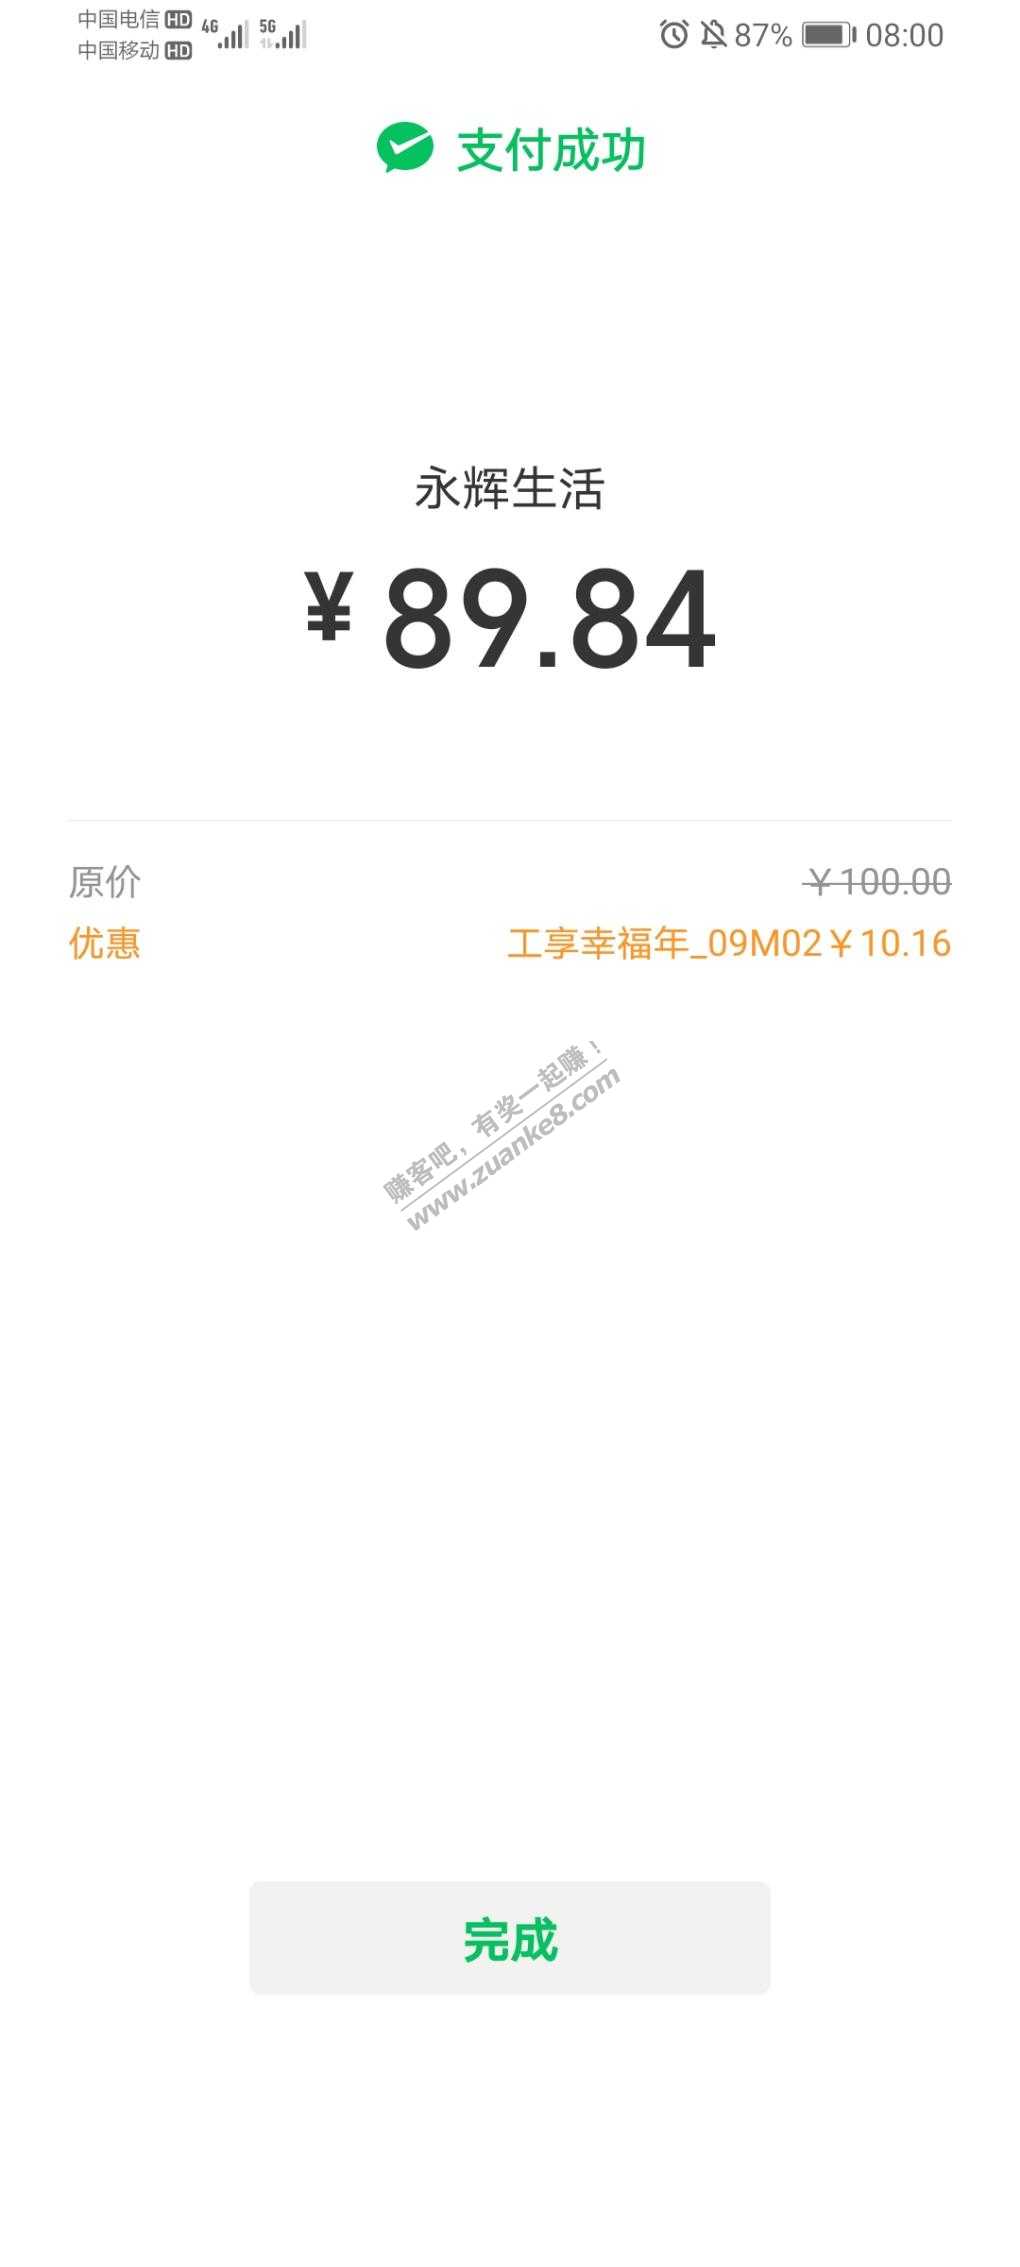 8点工行大羊毛 最高收益100+-惠小助(52huixz.com)